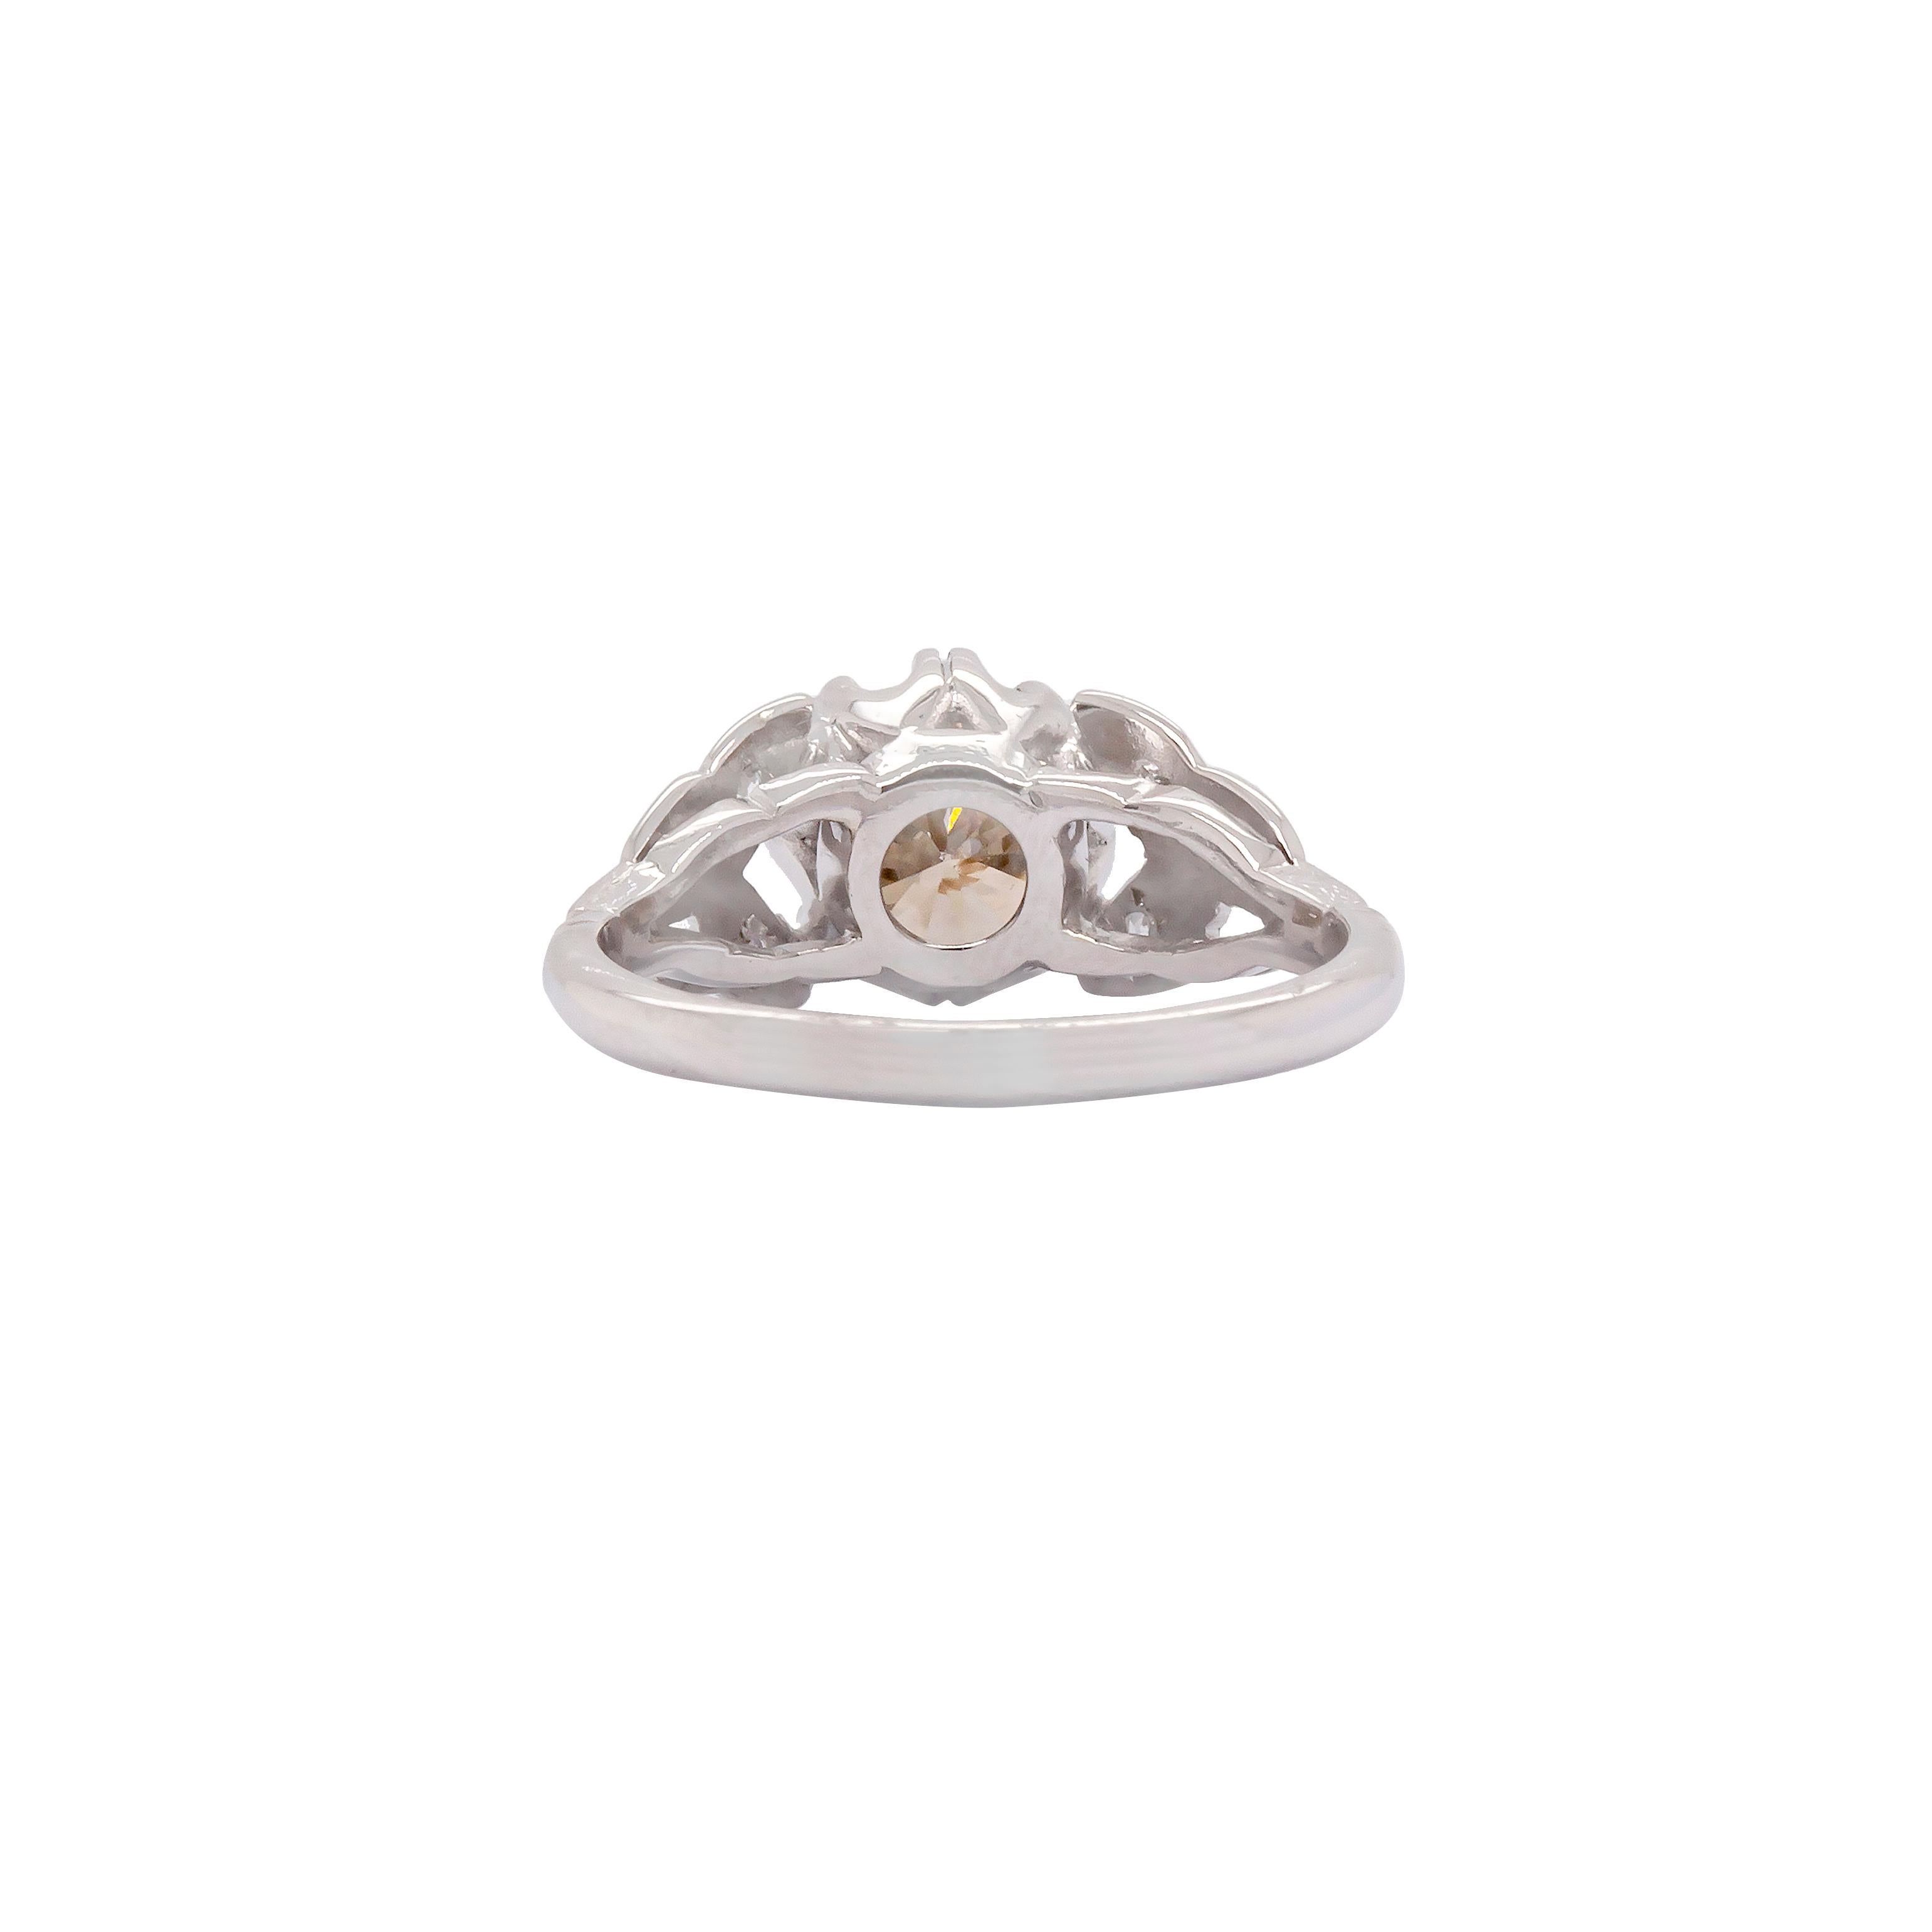 Este anillo vintage de los años 50 es el anillo de compromiso ideal para las mujeres a las que les encantaría llevar un trozo de historia como prueba de su compromiso y amor.

Un impresionante diamante talla antigua marrón fantasía de 1,18 ct es el